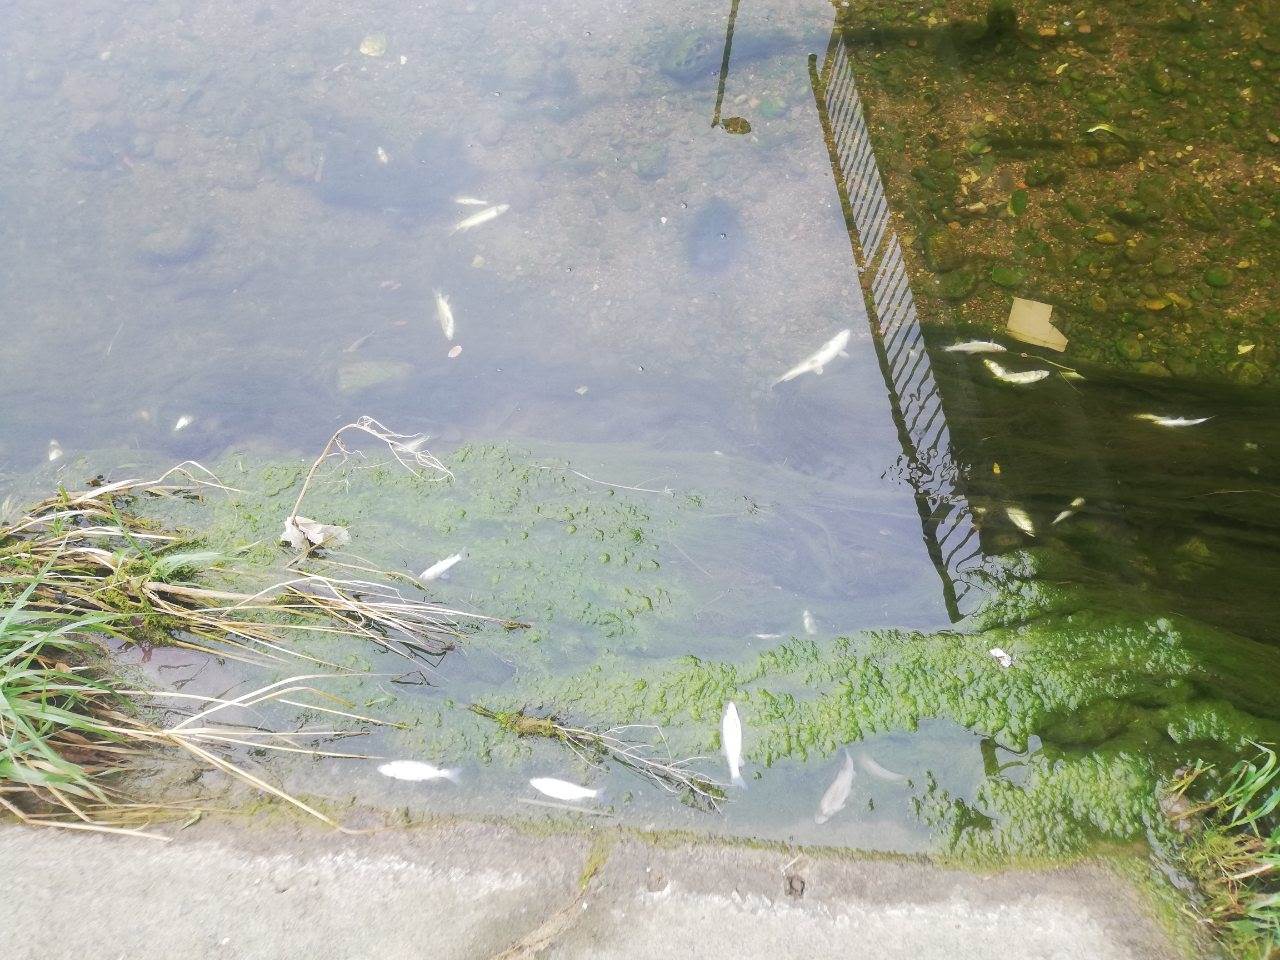  Pomor ribe u Širokoj rijeci u Banjaluci 